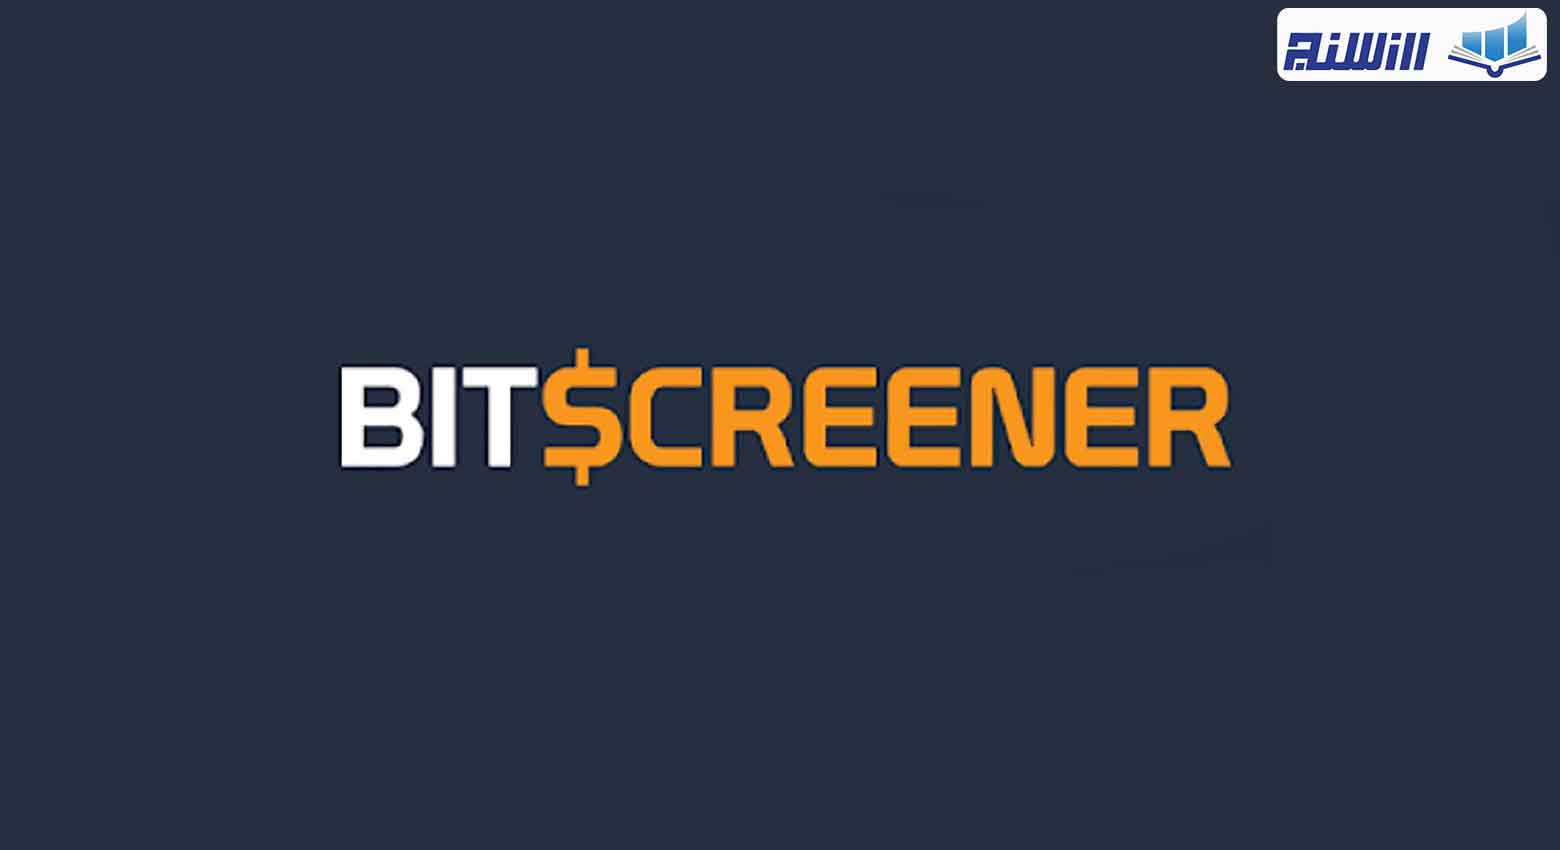 معرفی سایت بیت اسکرینر BitScreener (آموزش کار با سایت BitScreener)